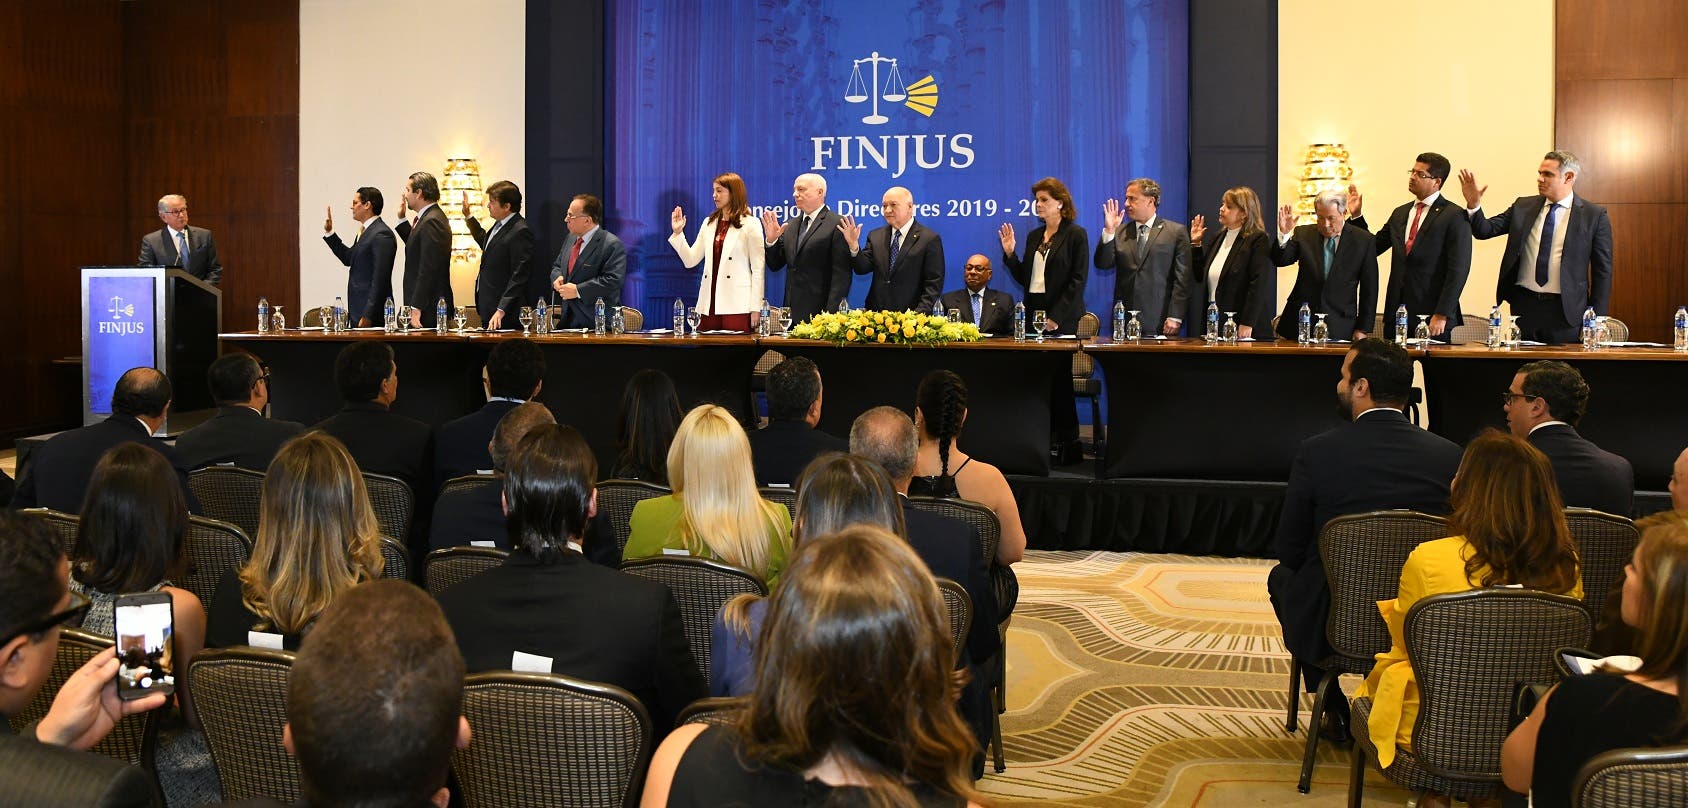 Finjus juramenta nuevo consejo de directores 2019-2021